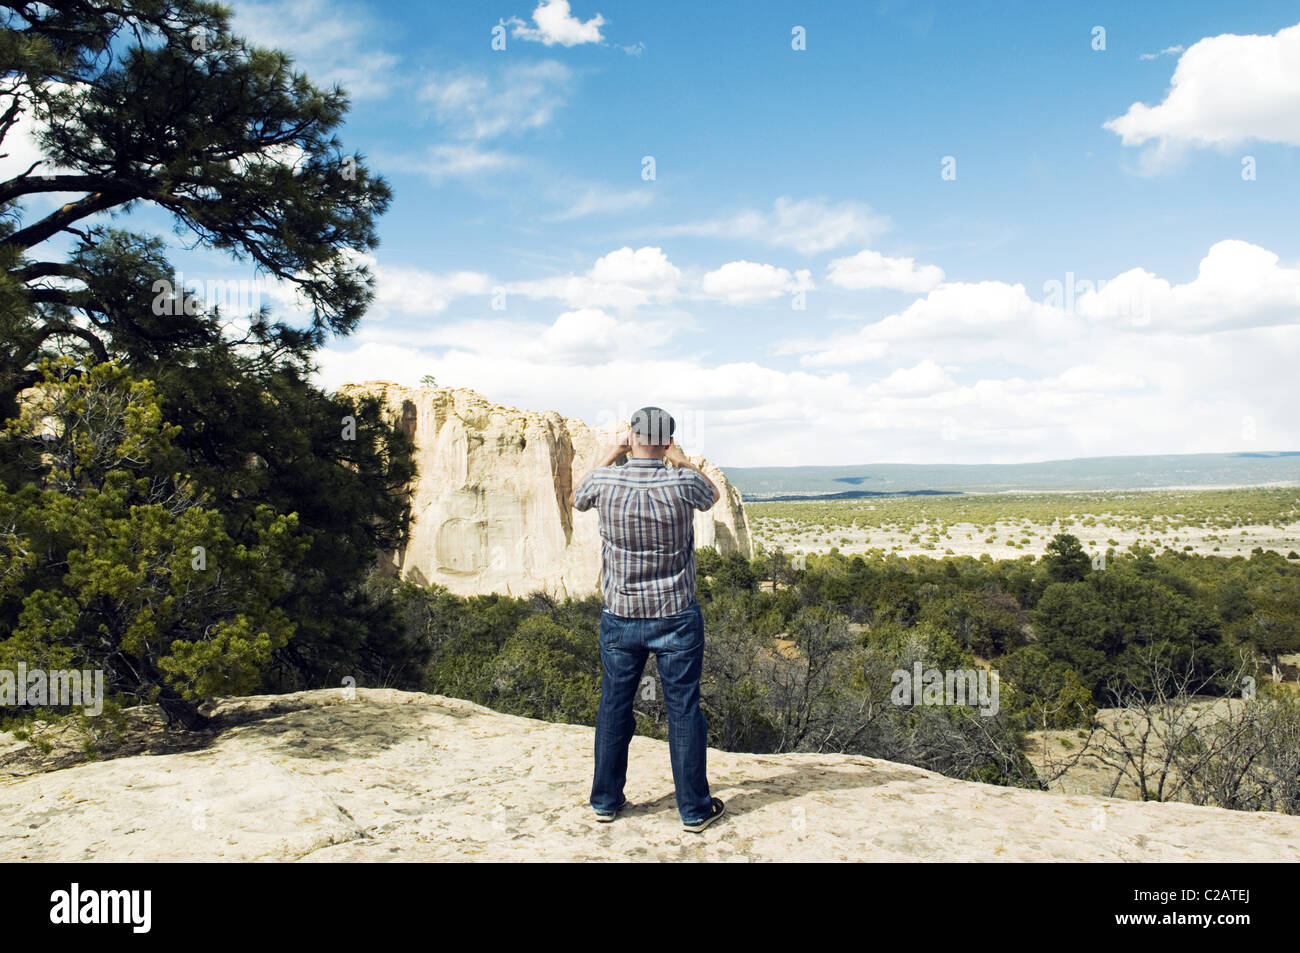 Photographie touristique El Morro National Monument, New Mexico, USA Banque D'Images